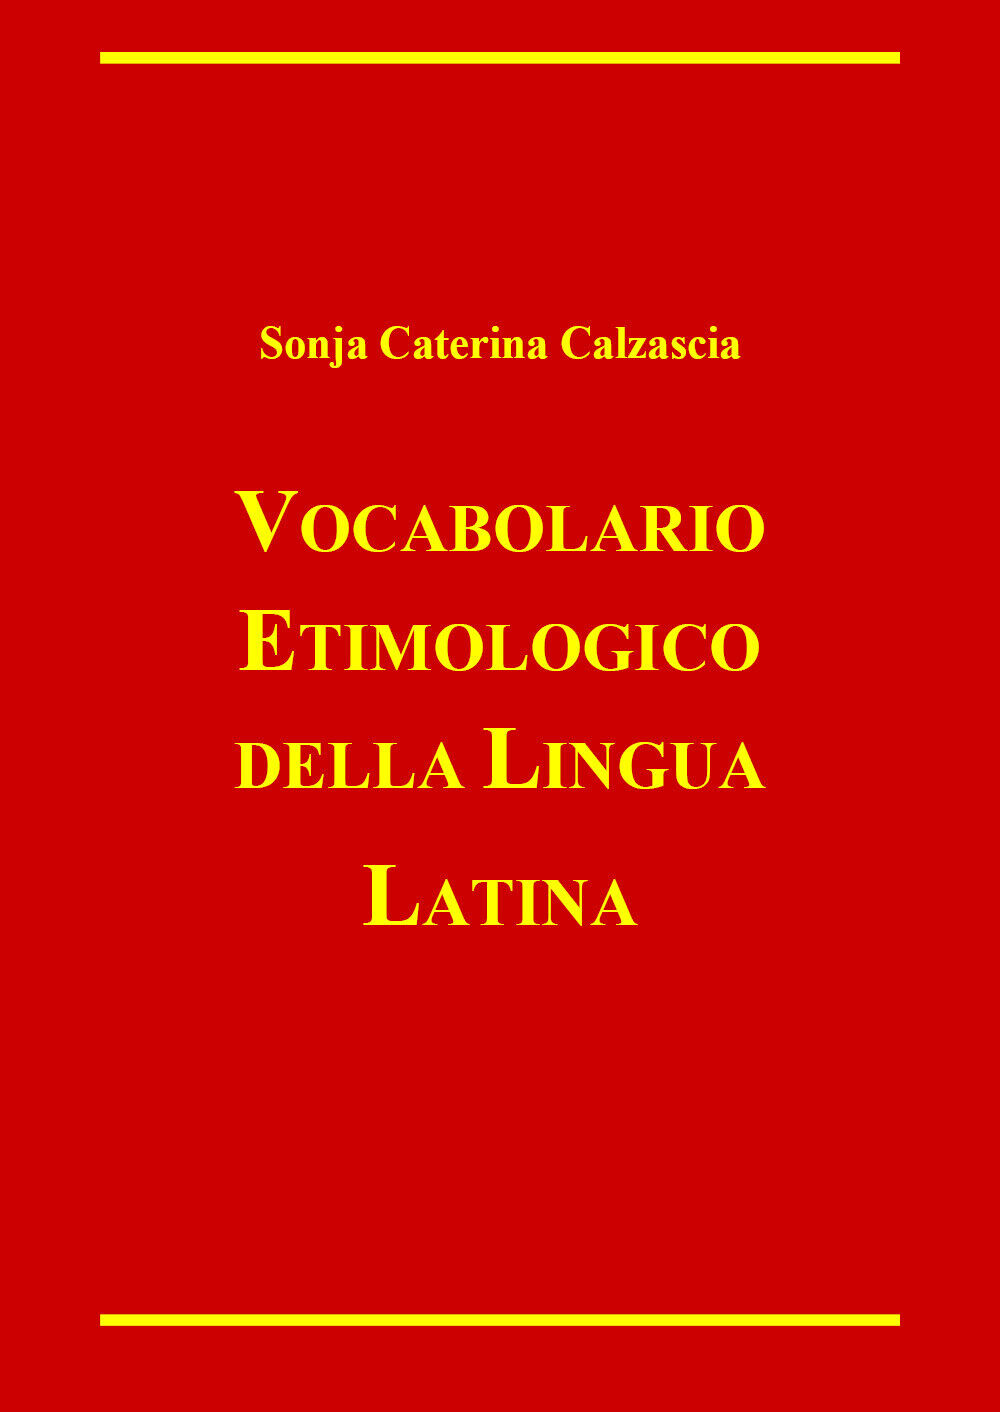 Vocabolario etimologico della lingua latina di Sonja Caterina Calzascia,  2022, 